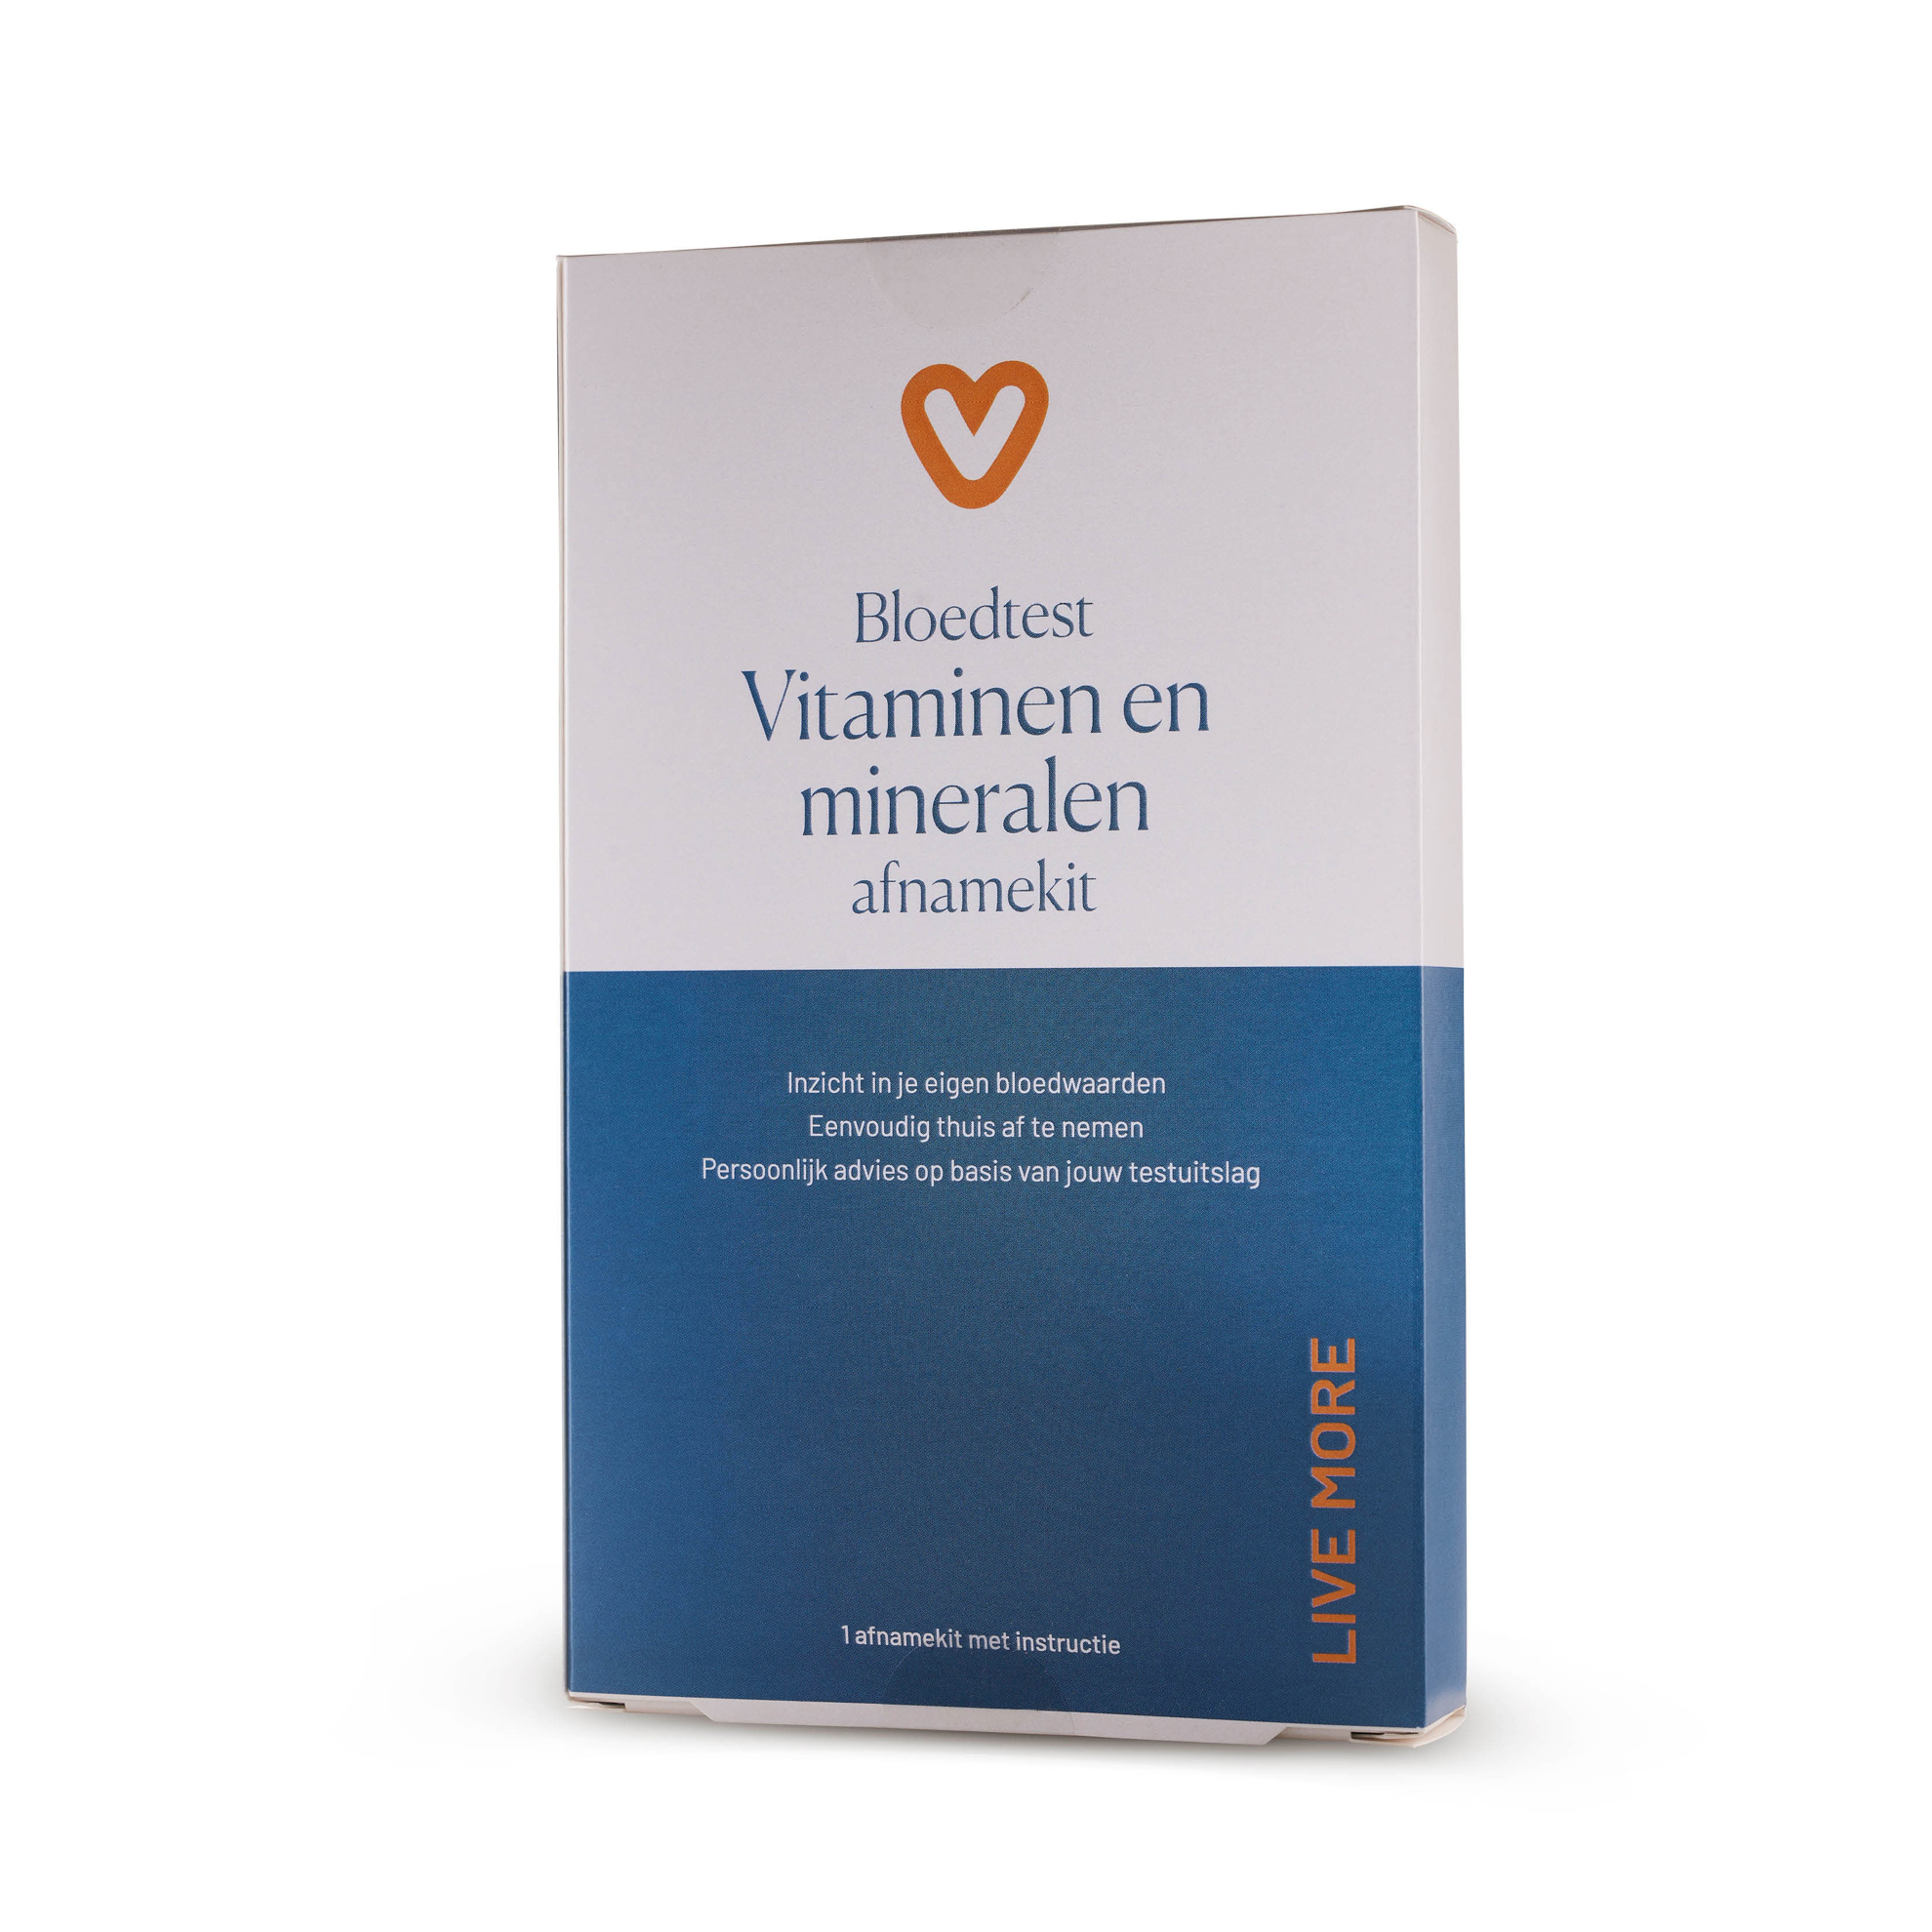  Vitaminen Mineralen Test - 1 stuk - Vitaminstore